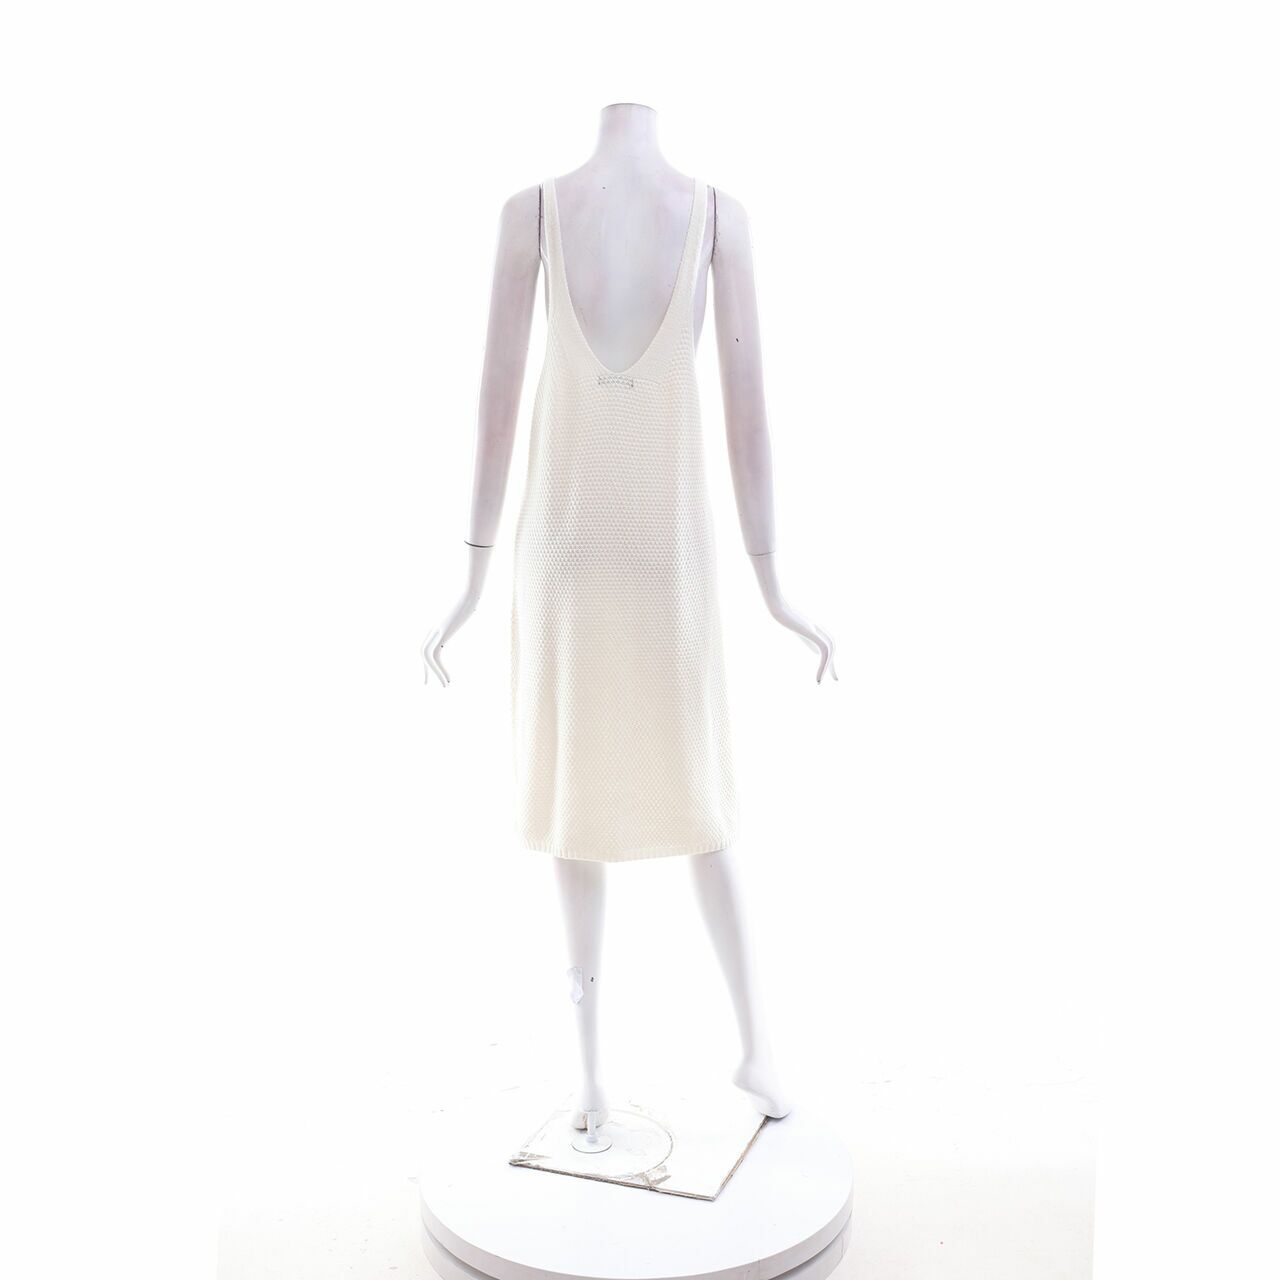 Zaful Off White Knit Mini Dress